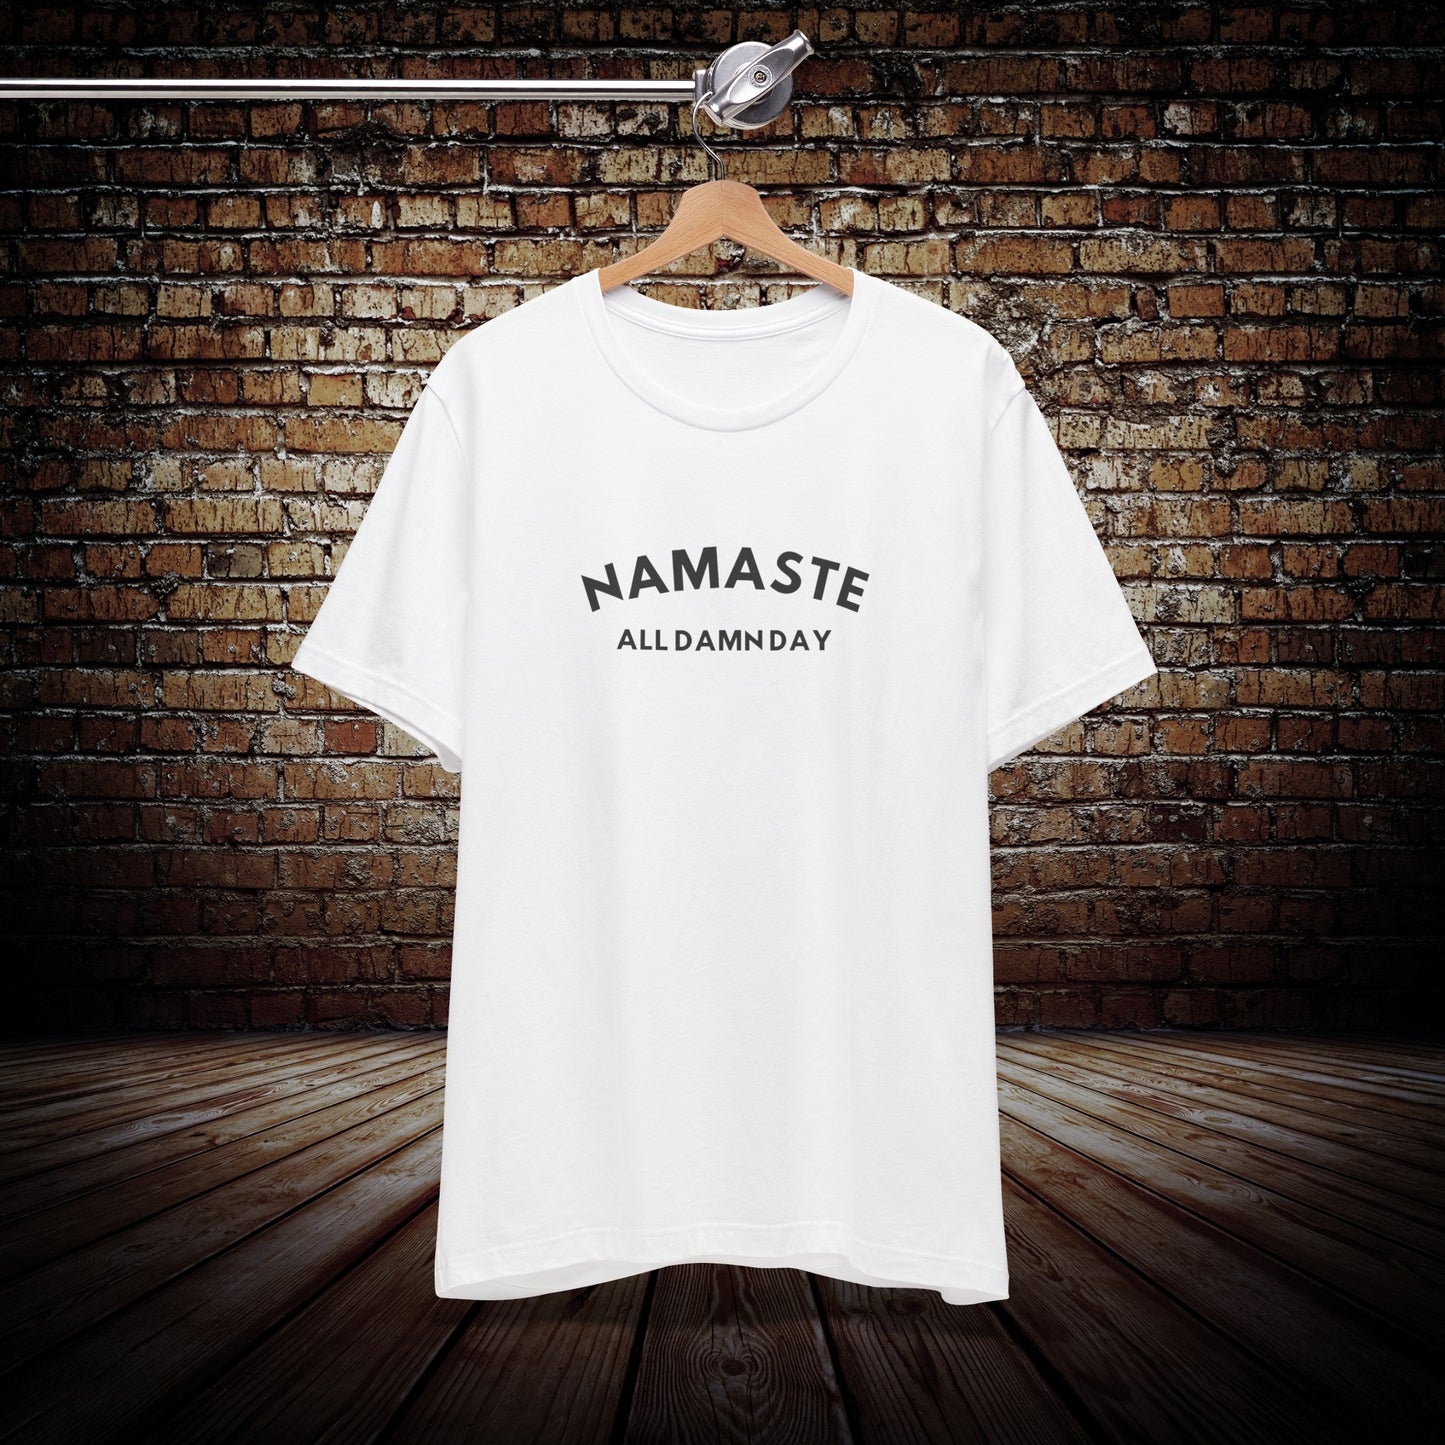 Namaste All Damn Day - Yoga Inspired T-Shirt